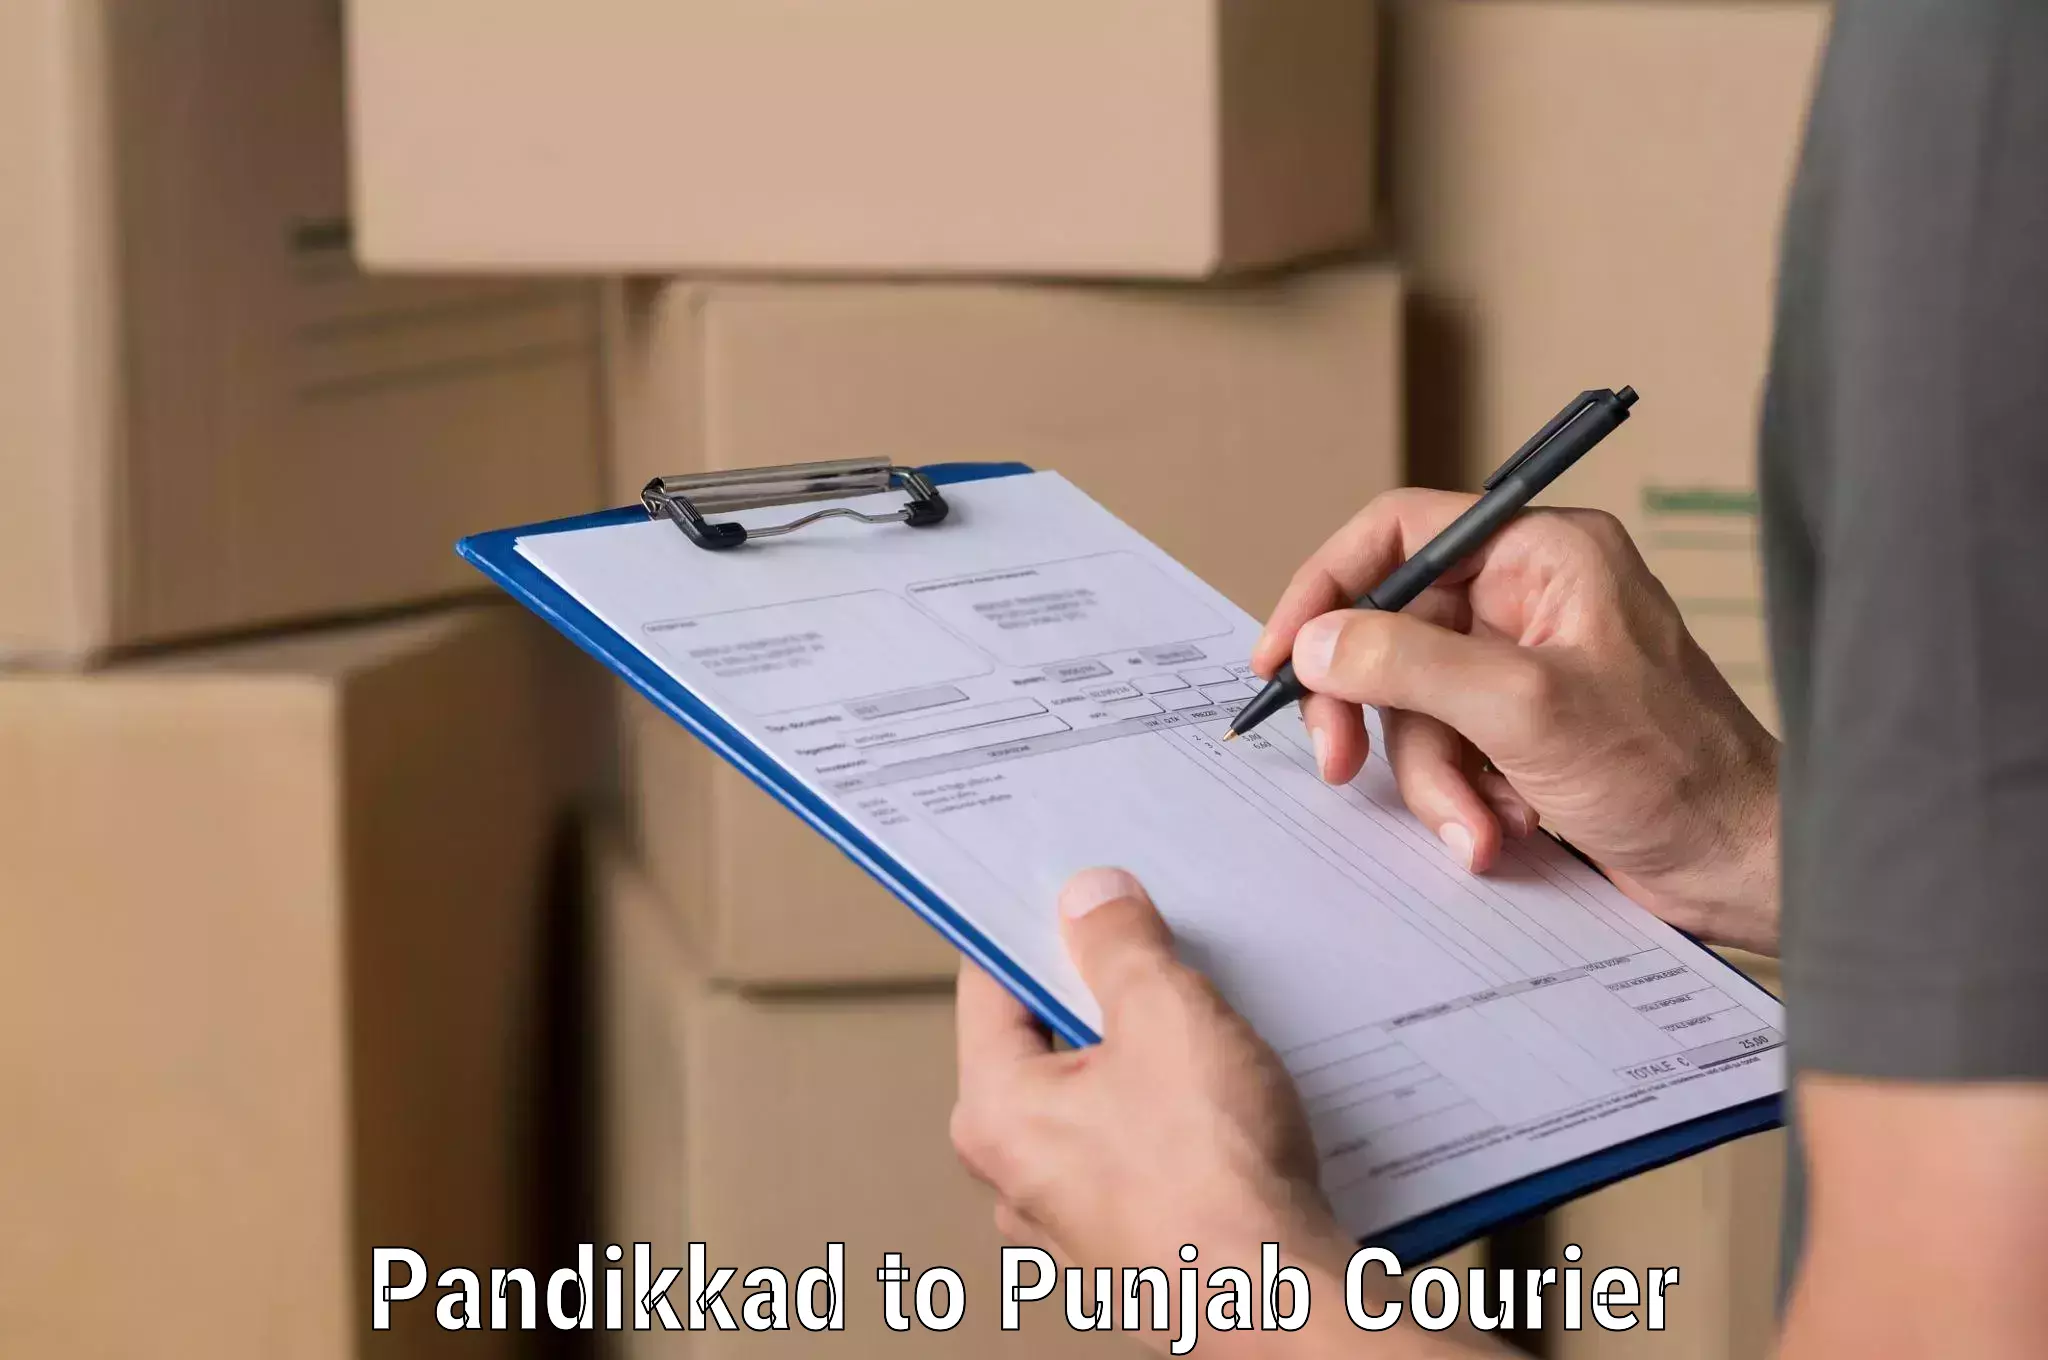 Efficient parcel service Pandikkad to Sirhind Fatehgarh